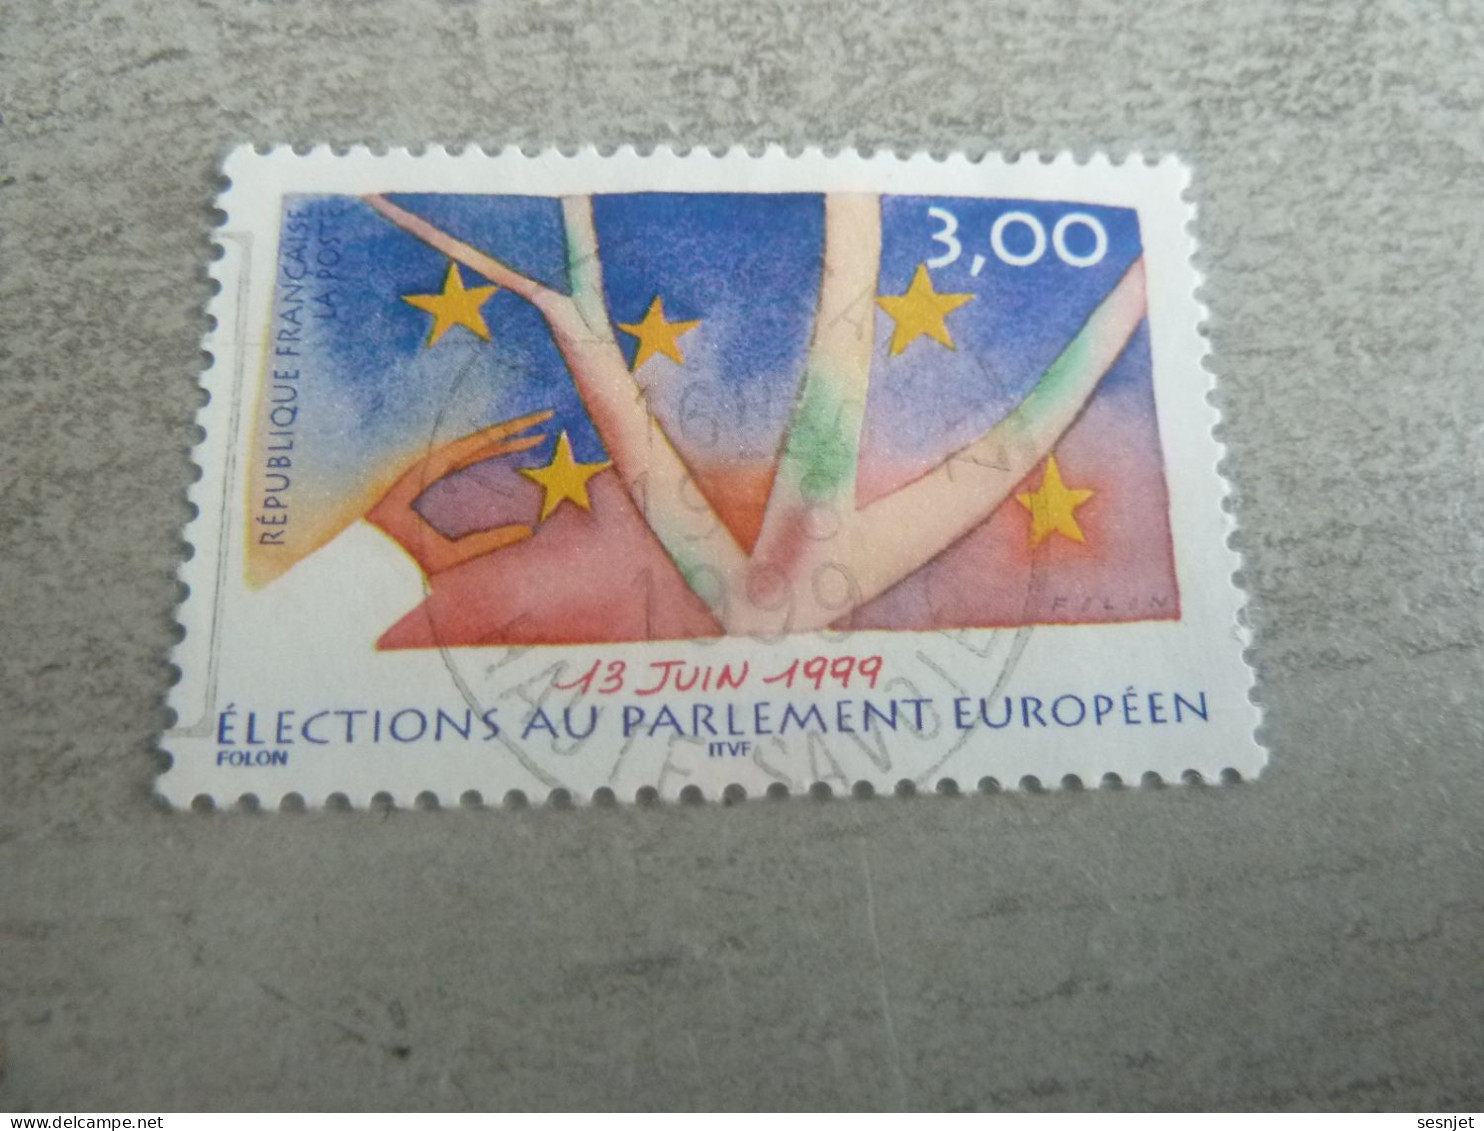 Elections Au Parlement Européen - 3f. - Yt 3237 - Multicolore - Oblitéré - Année 1999 - - Oblitérés